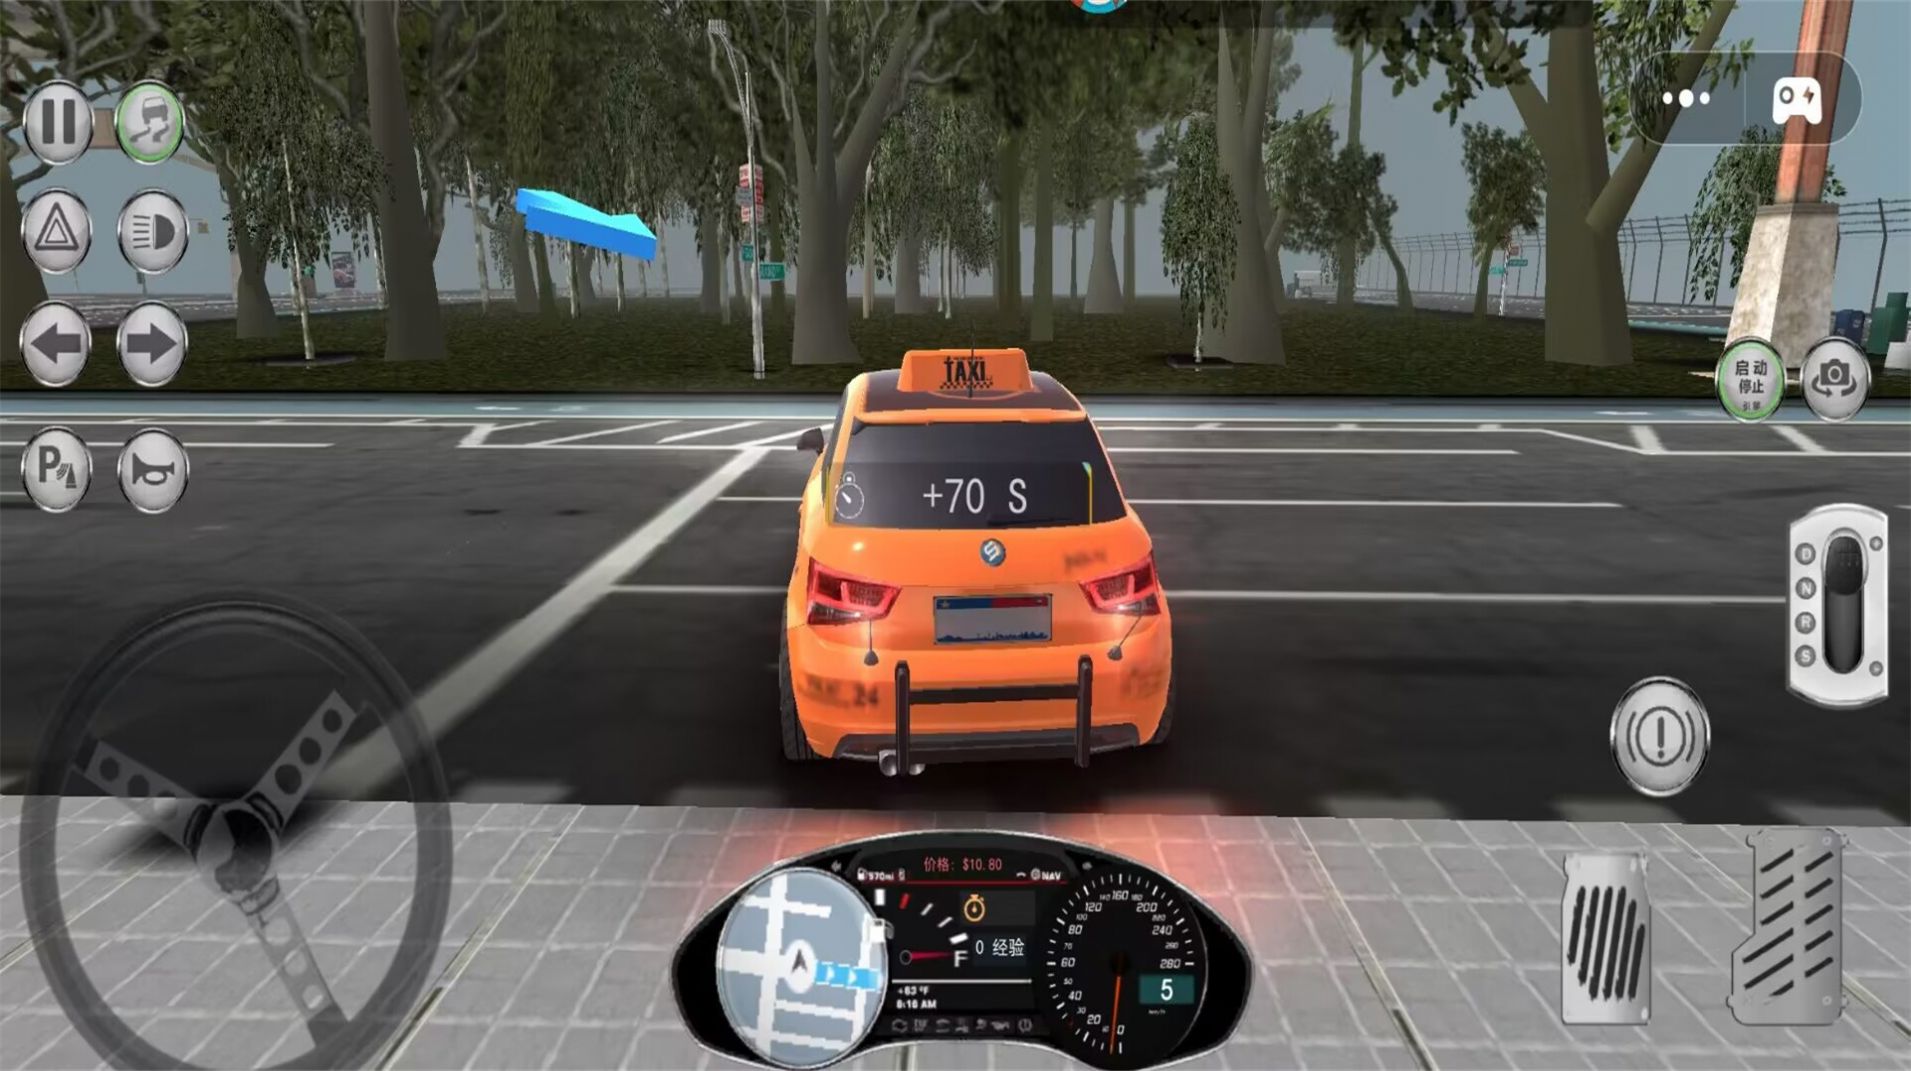 出租车司机模拟最新版官方下载 v1.0截图1